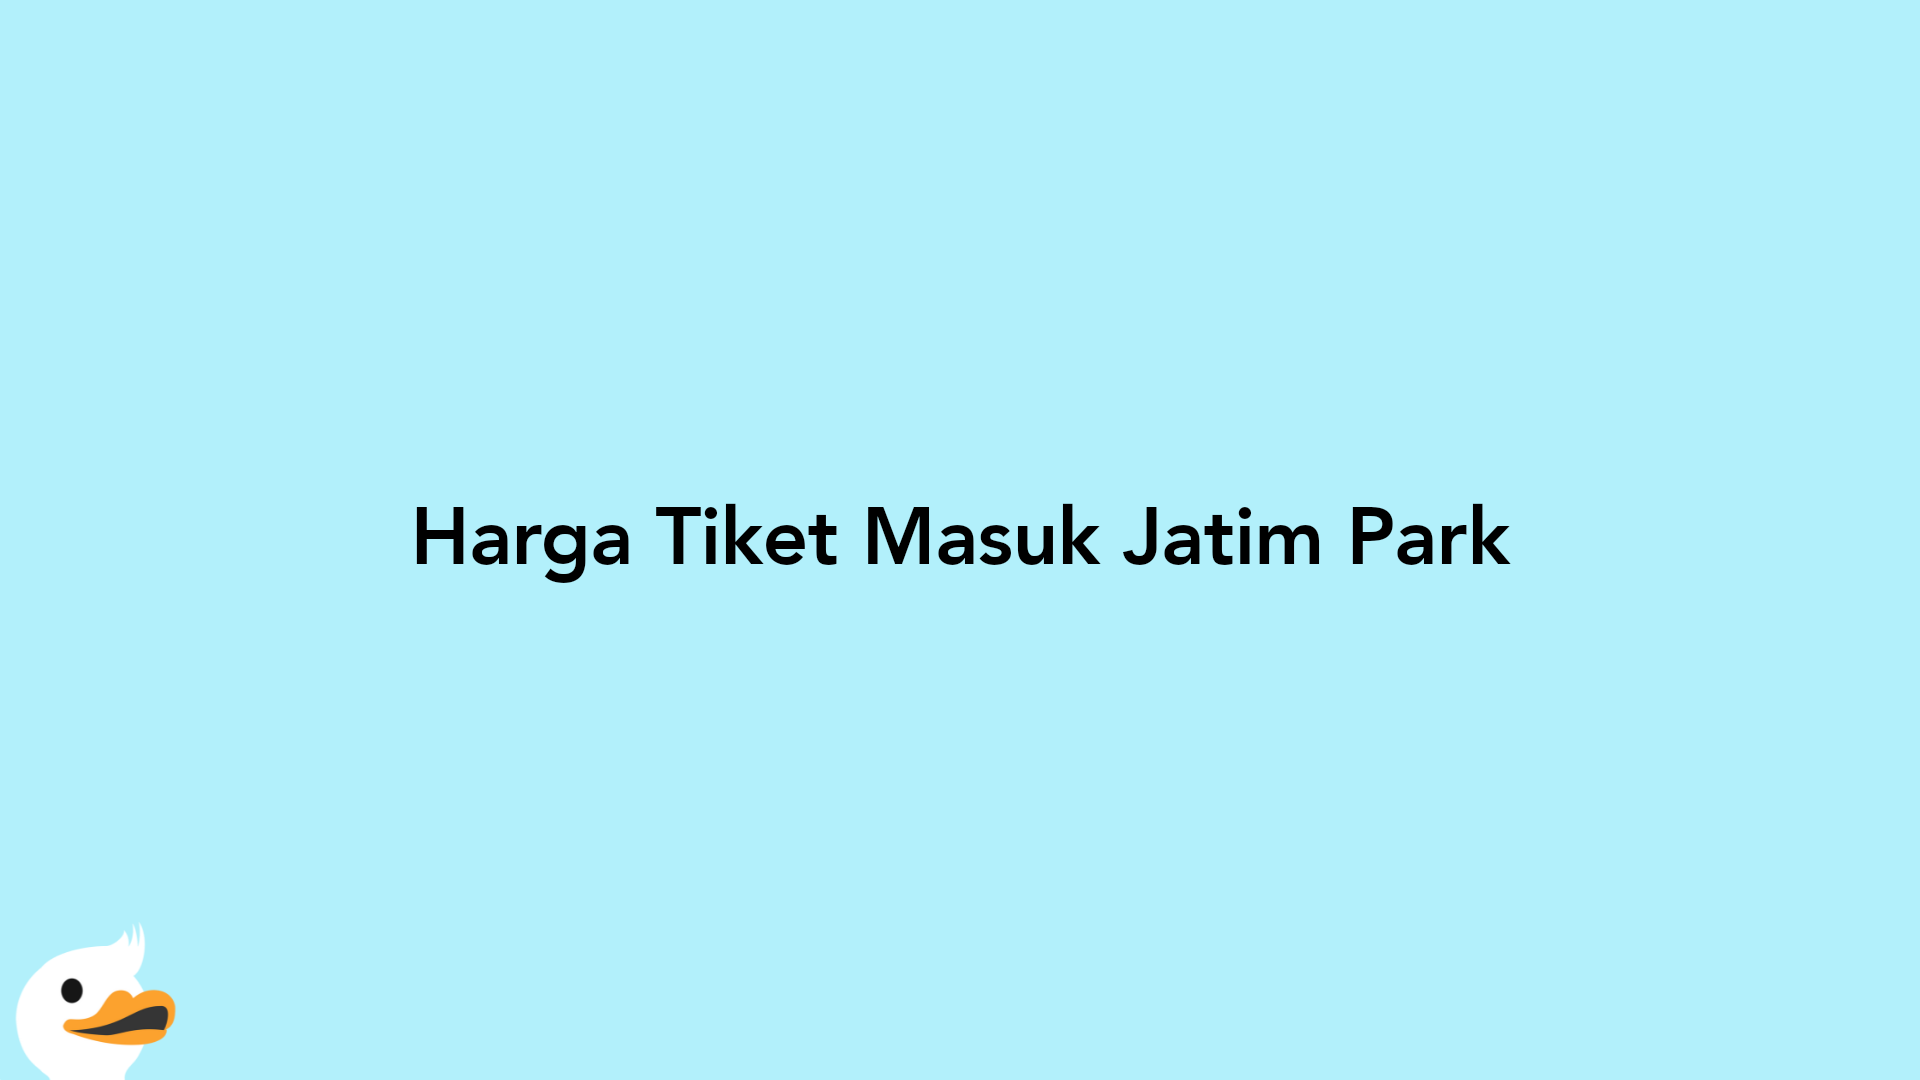 Harga Tiket Masuk Jatim Park